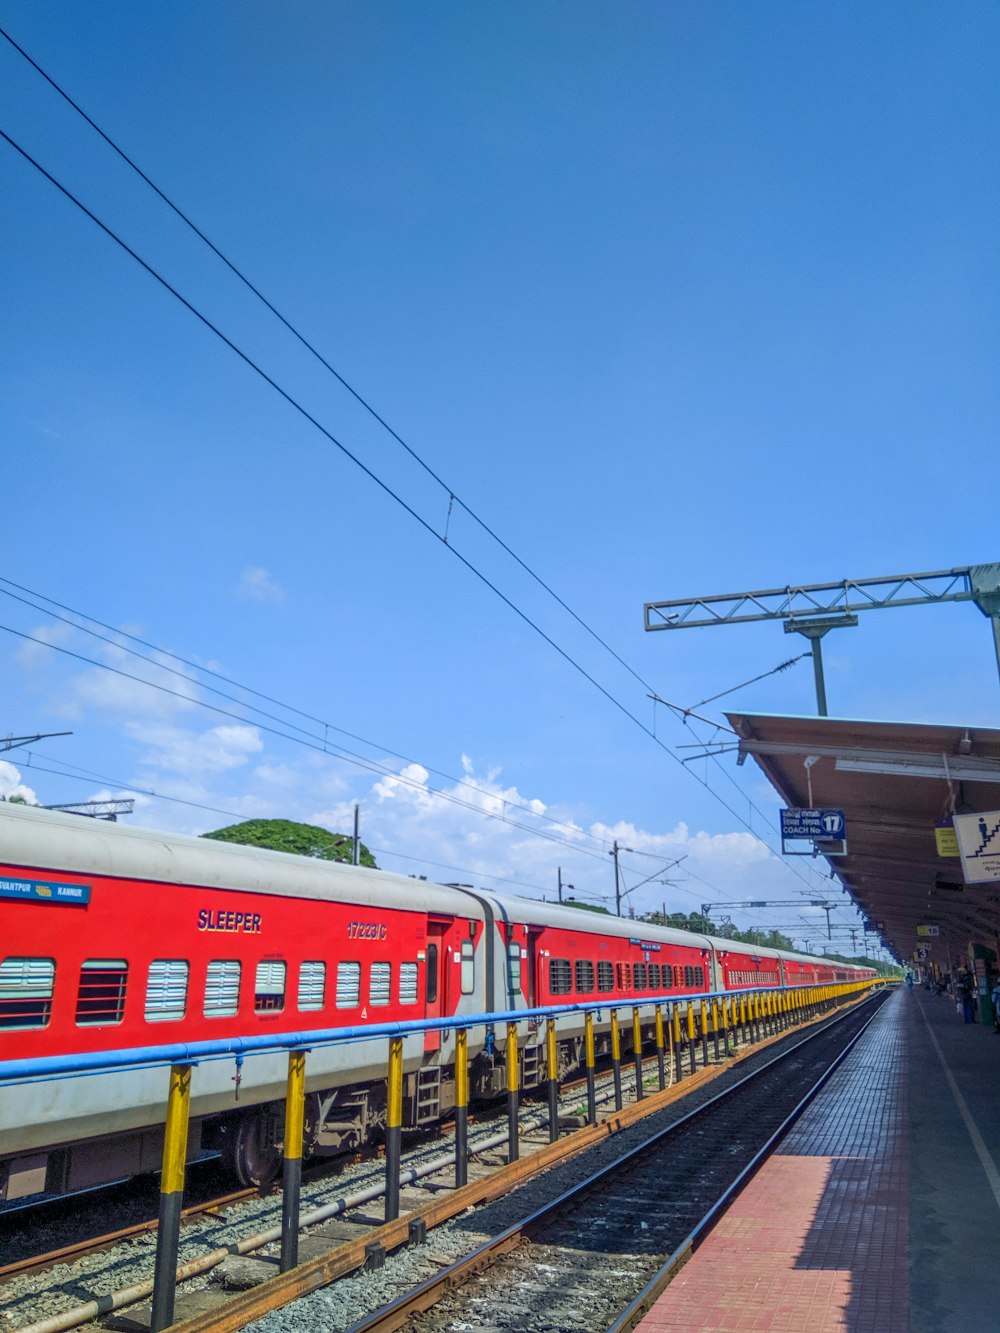 Tren rojo y blanco bajo el cielo azul durante el día